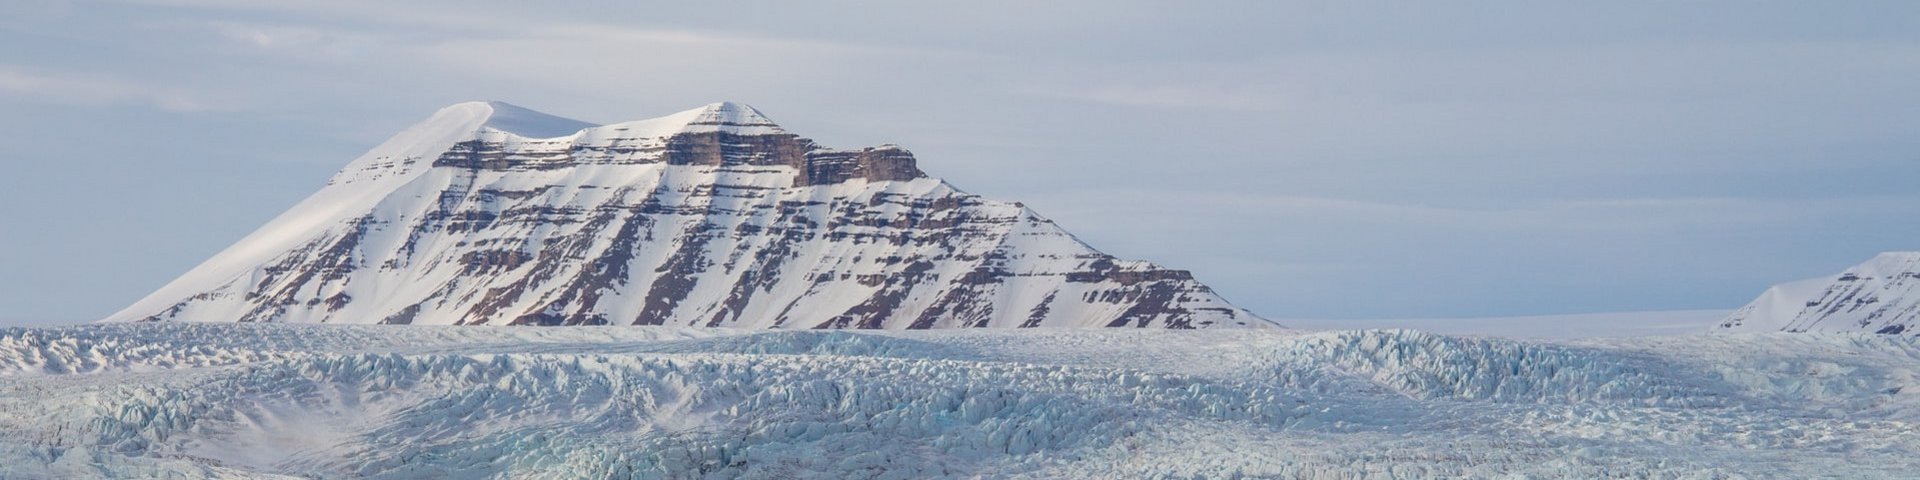 Bucht mit verschneitem Berg im Hintergrund